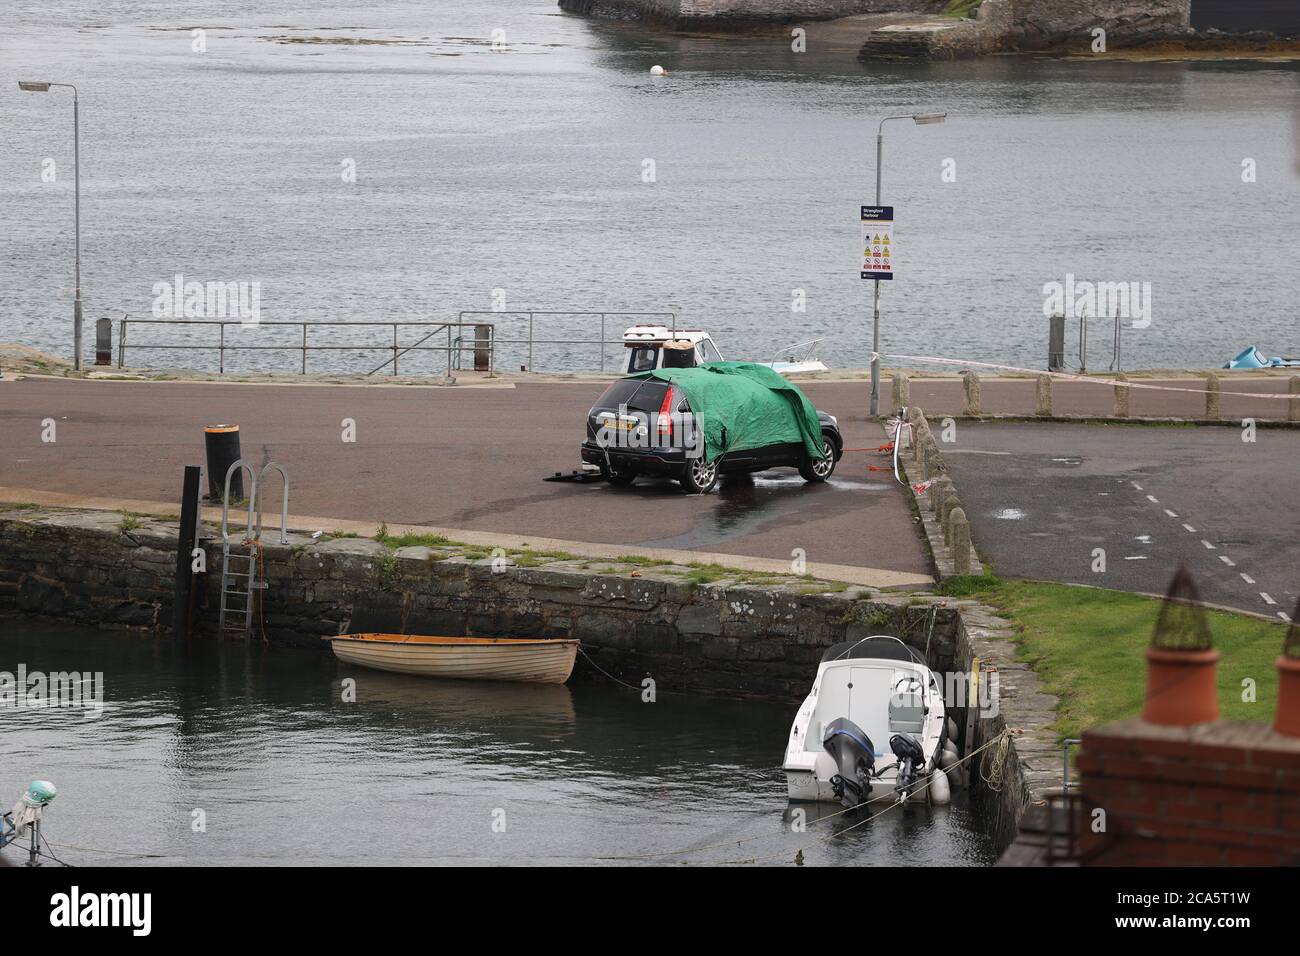 Une voiture est examinée après son entrée dans l'eau au port de Strangford, Co Down. Brian Black, qui avait travaillé comme présentateur et fabricant de programmes avec UTV, est décédé à la suite de l'incident. Banque D'Images